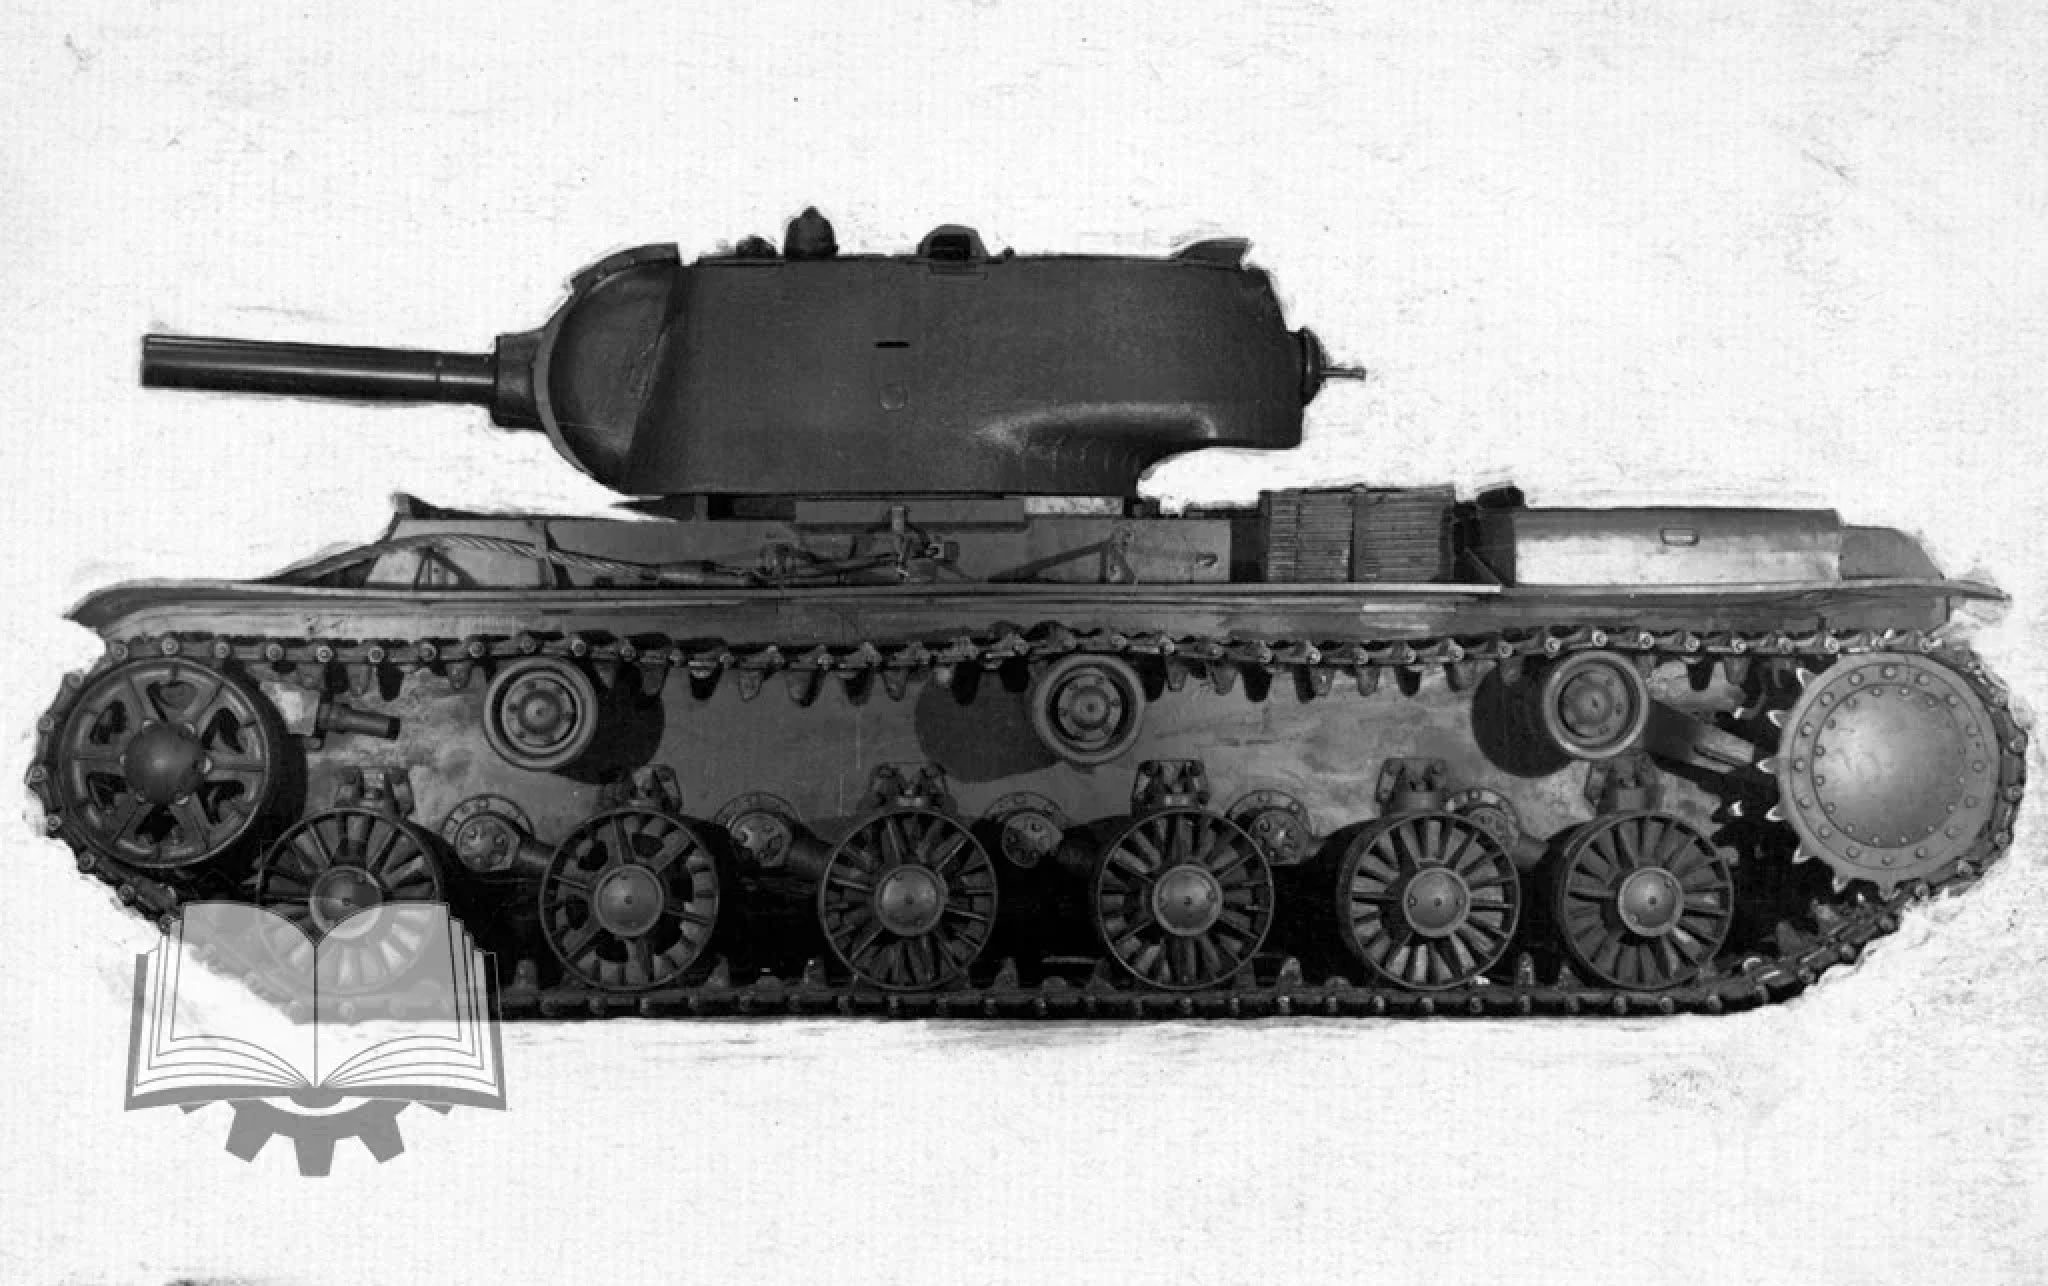 Кв-9 танк